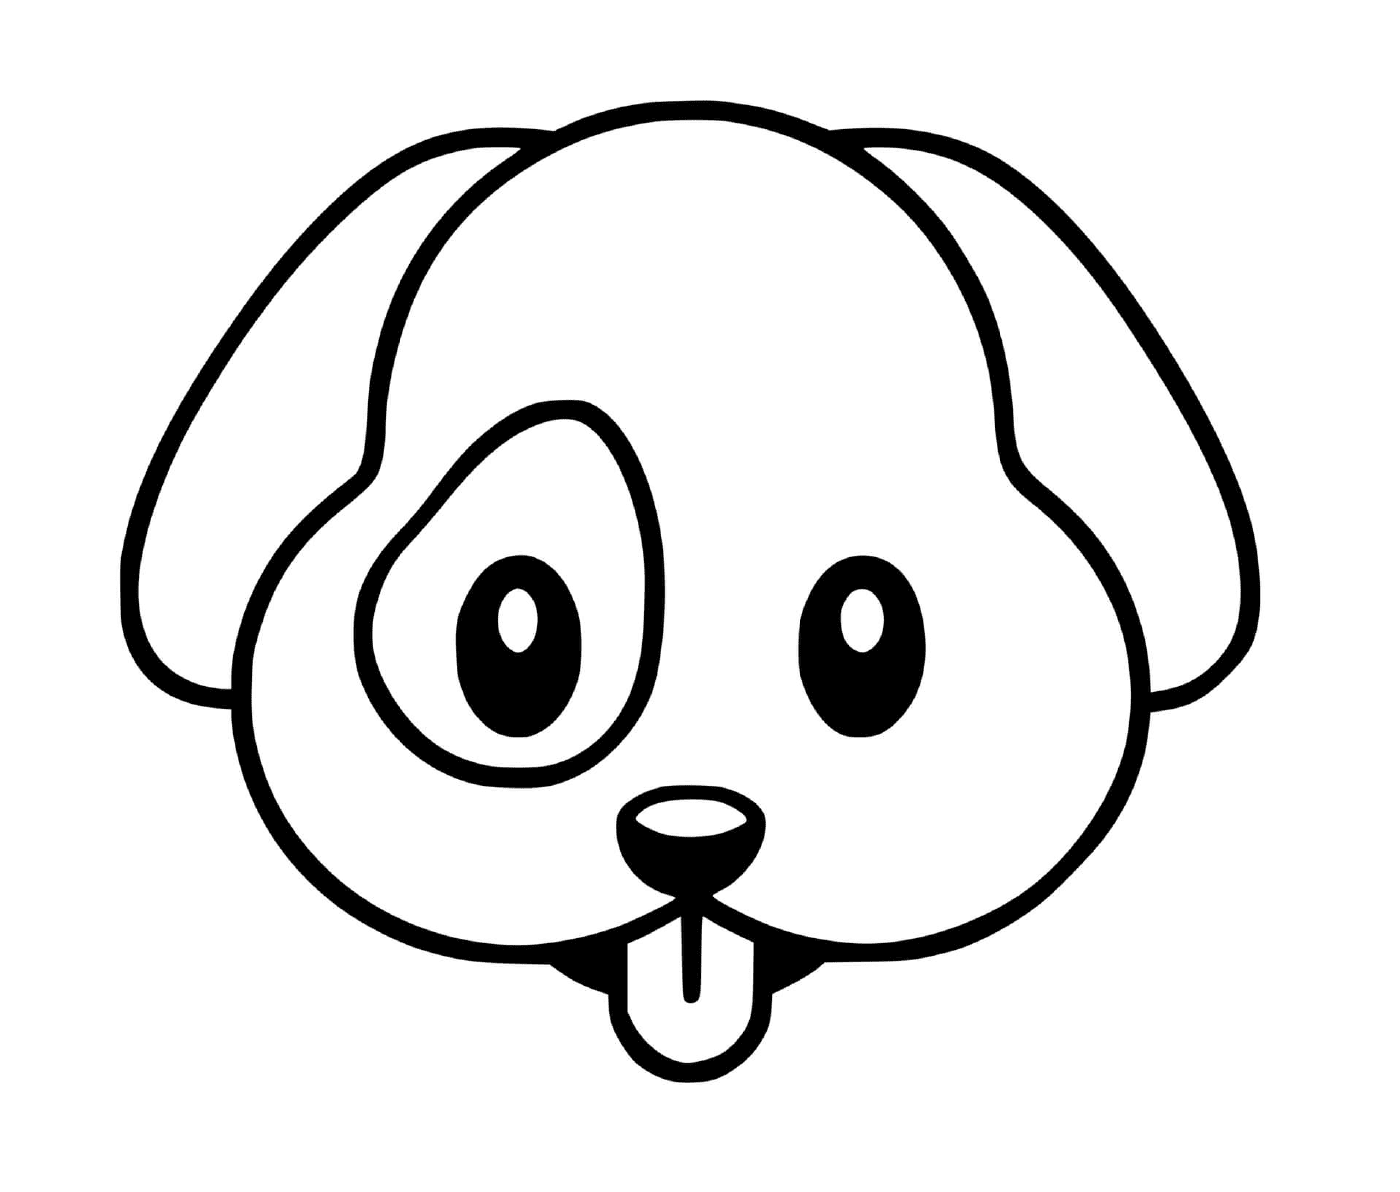  Dog kawaii, adorable companion 